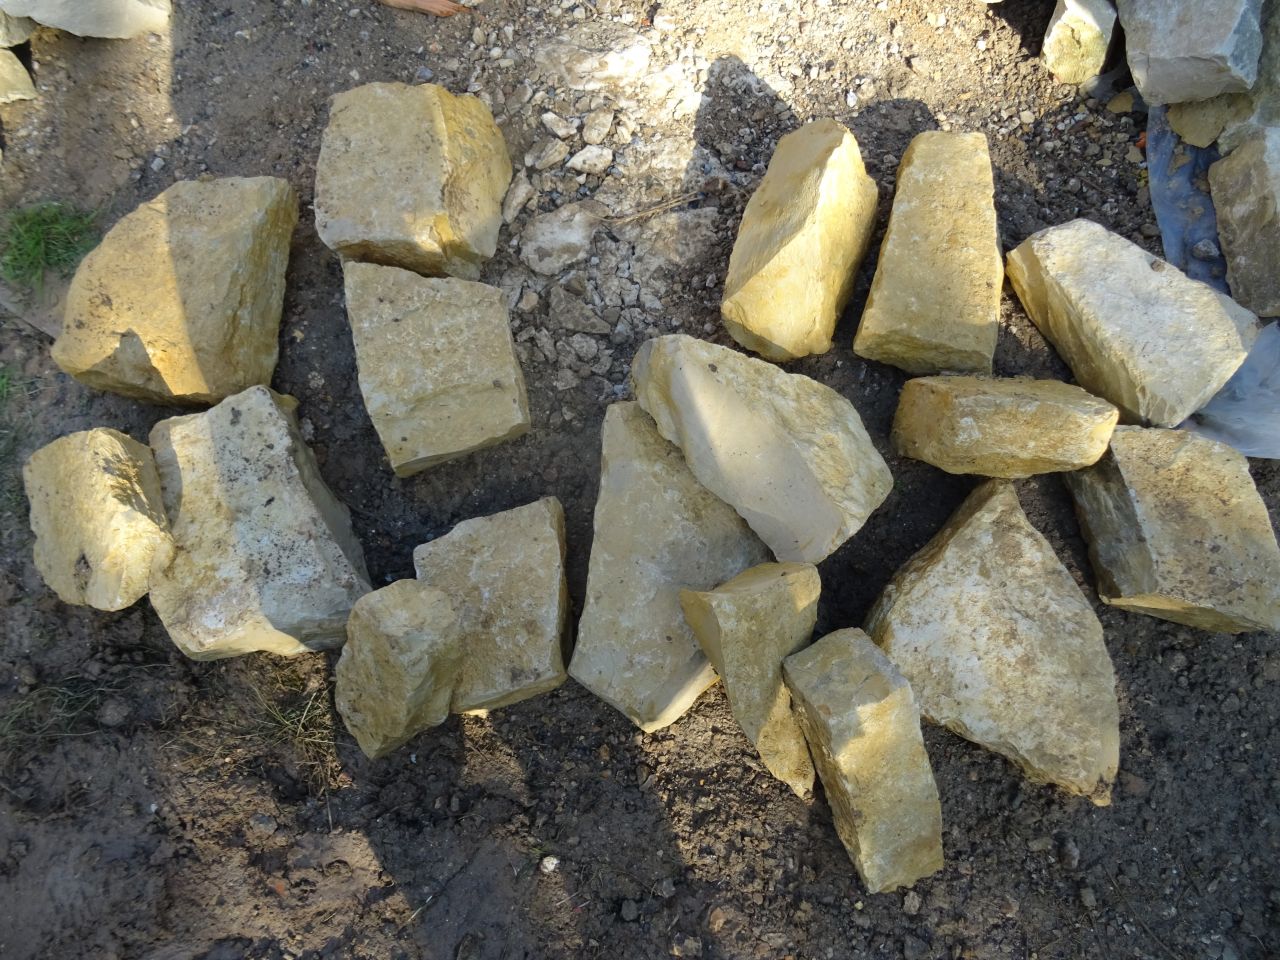 17 pierres remontées, heureusement qu'elles n'étaient pas toutes grosses...
<br />
Difficile de les sortir de la terre argileuse quand elles y étaient bien engluées.